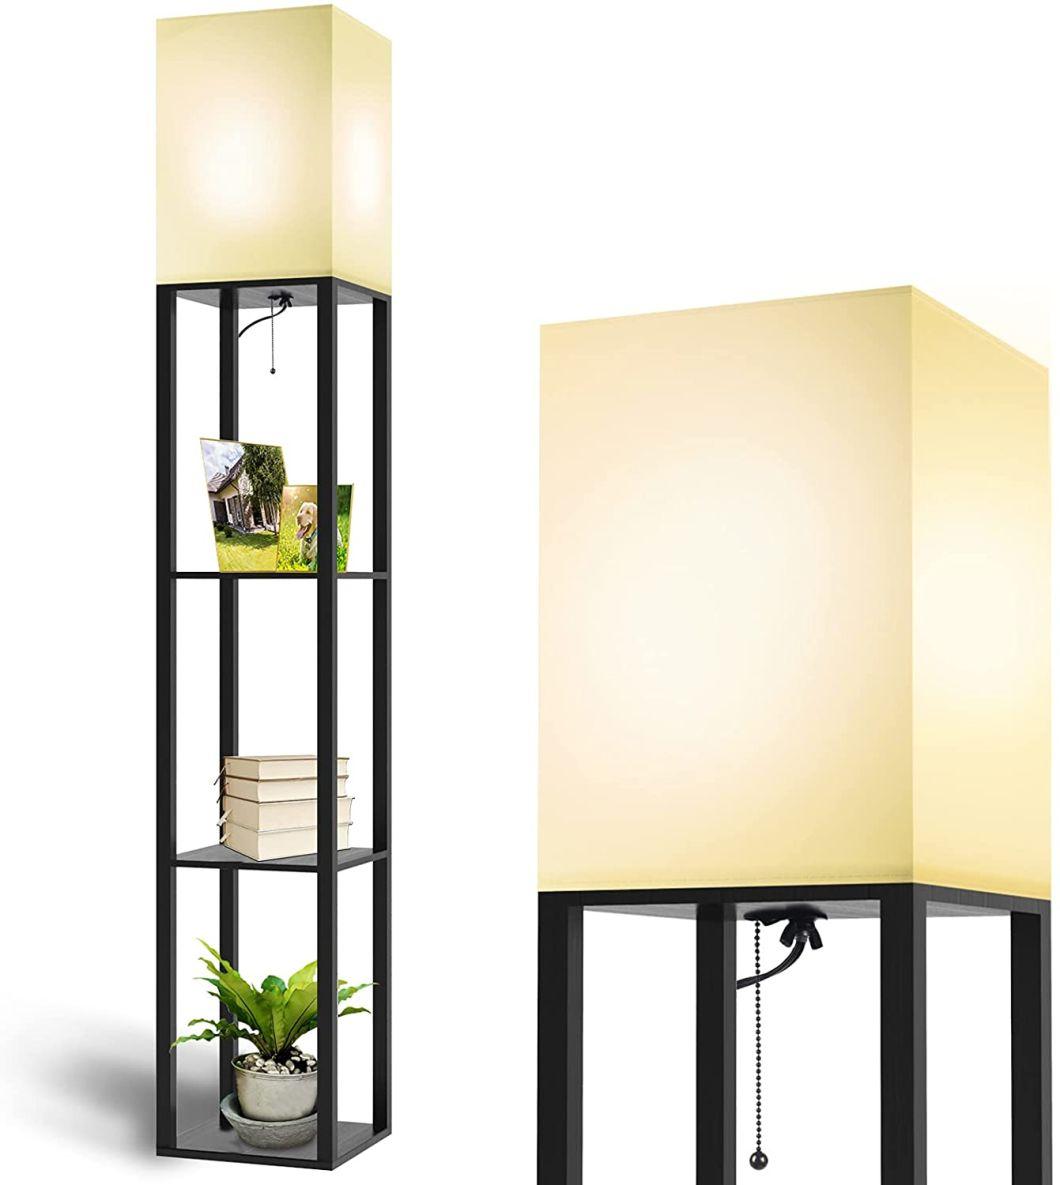 Luxury Nordic Modern Wooden Shelf Night Standing Floor Lamp Black for Living Room